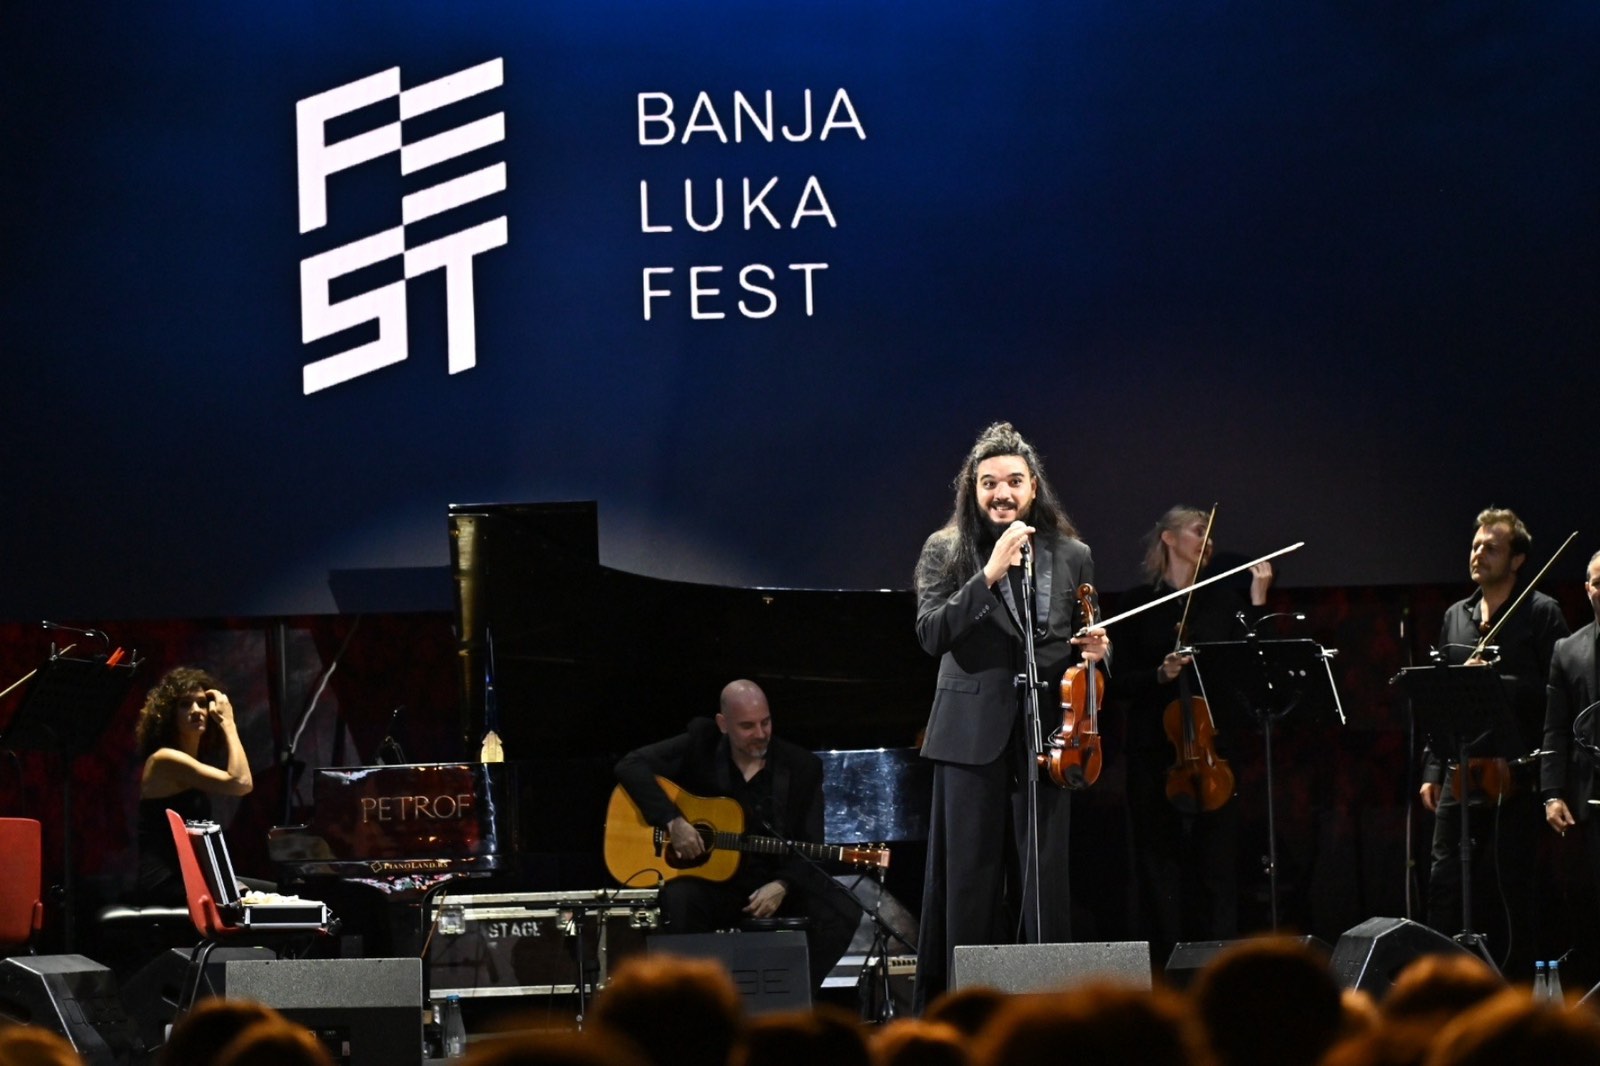 Banja Luka Fest